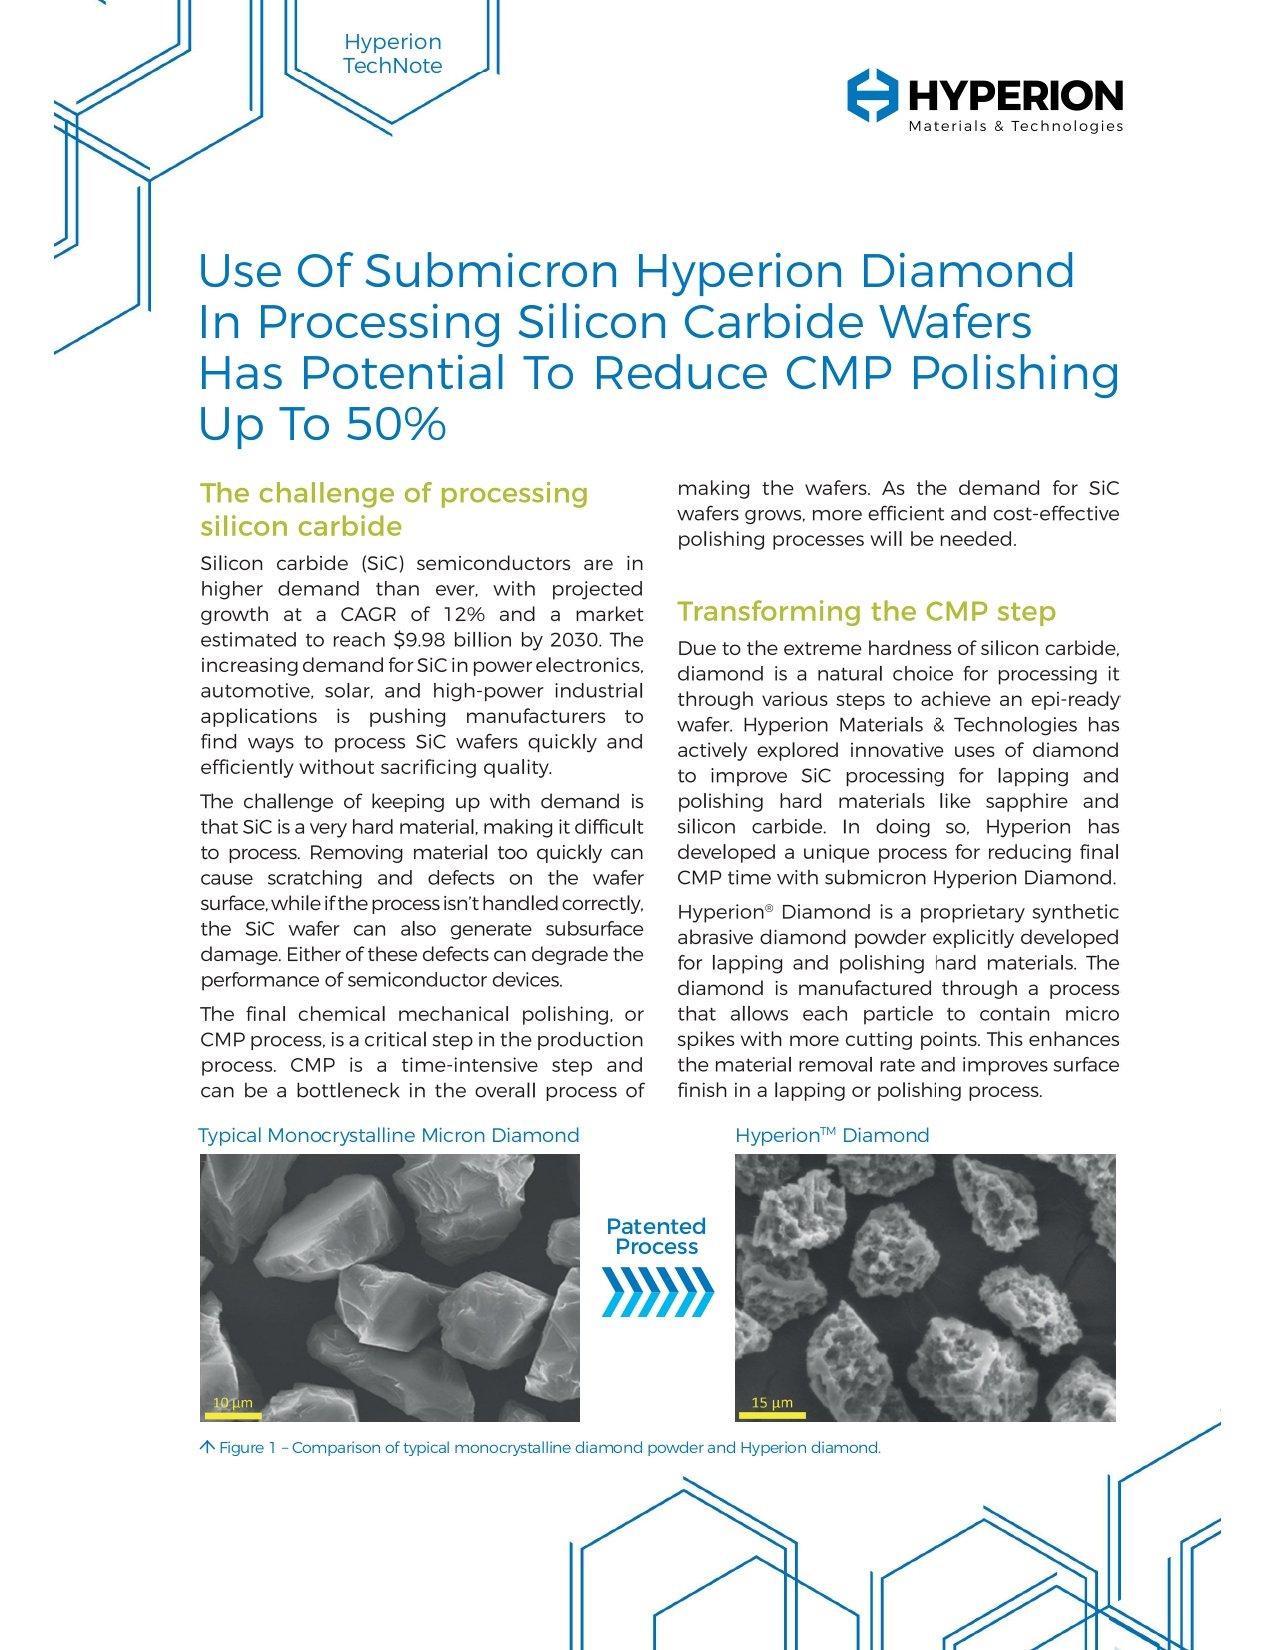 海博锐通过减少CMP抛光来提高碳化硅晶片的产量